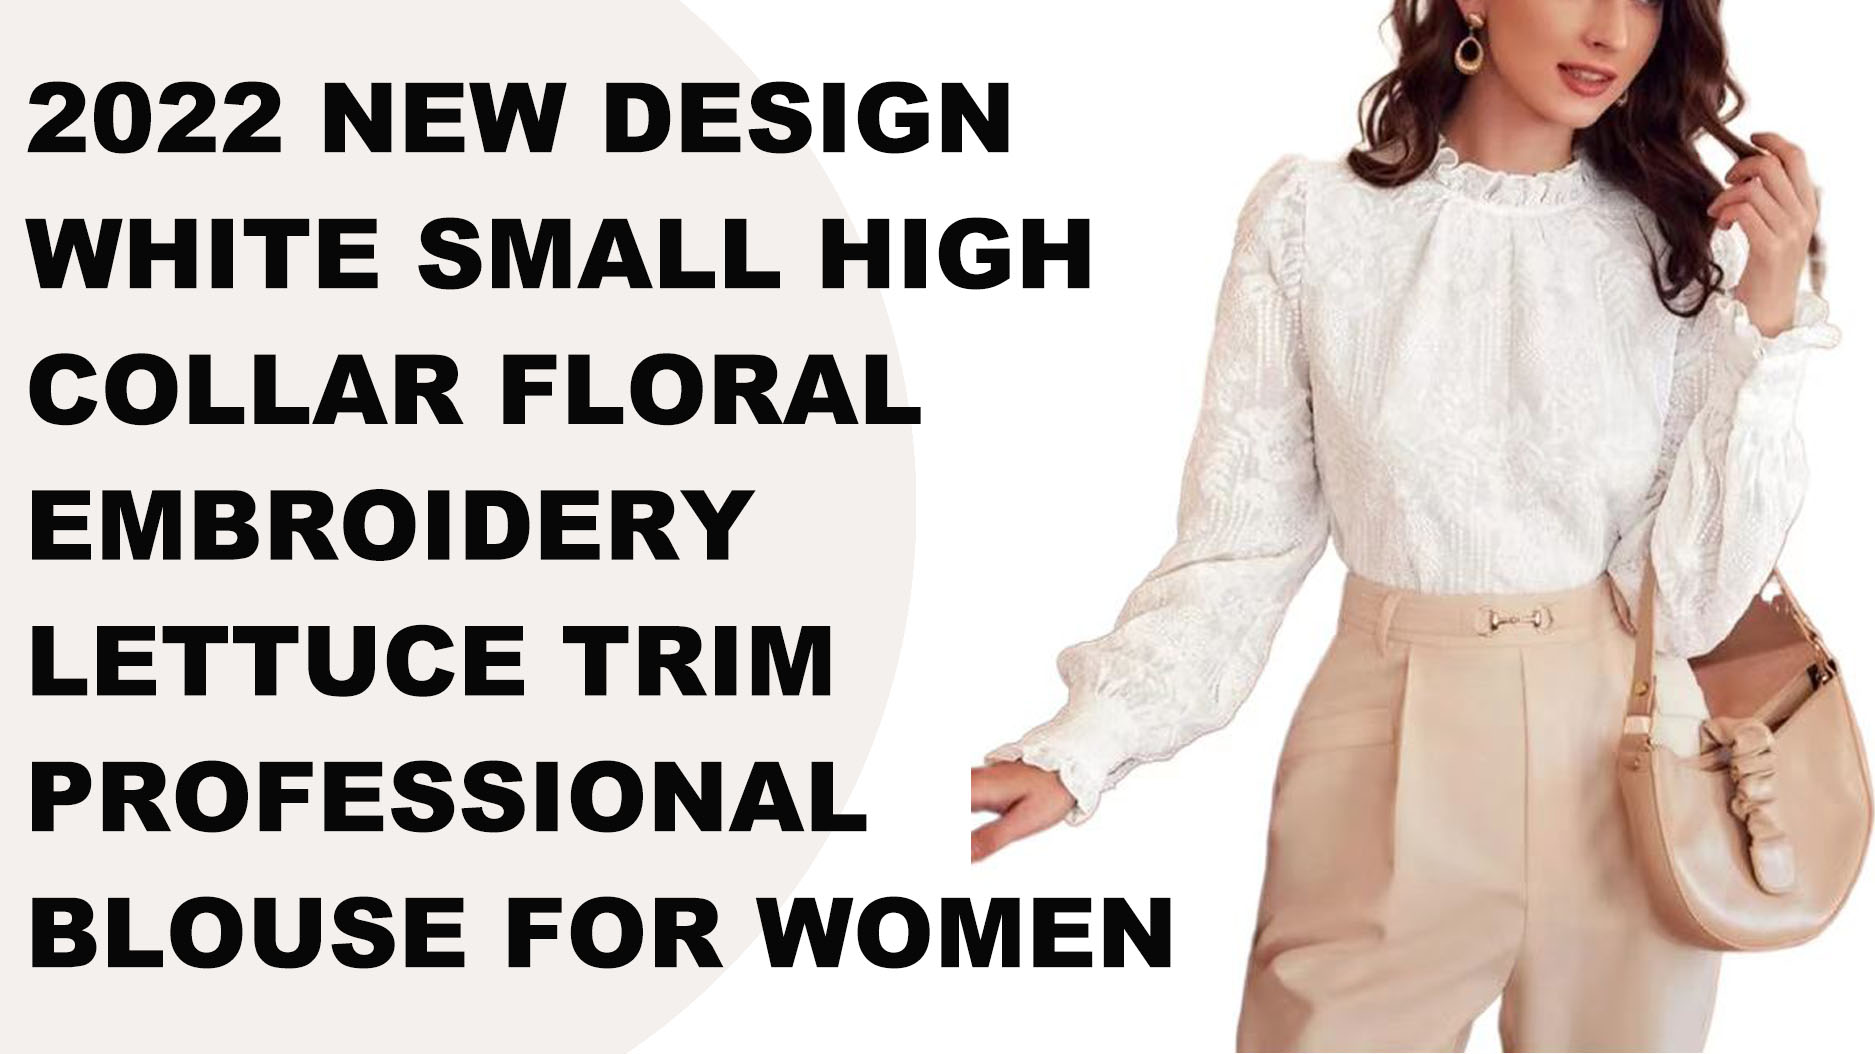 2022 novo design branco pequeno gola alta floral bordado alface guarnição blusa profissional para mulher